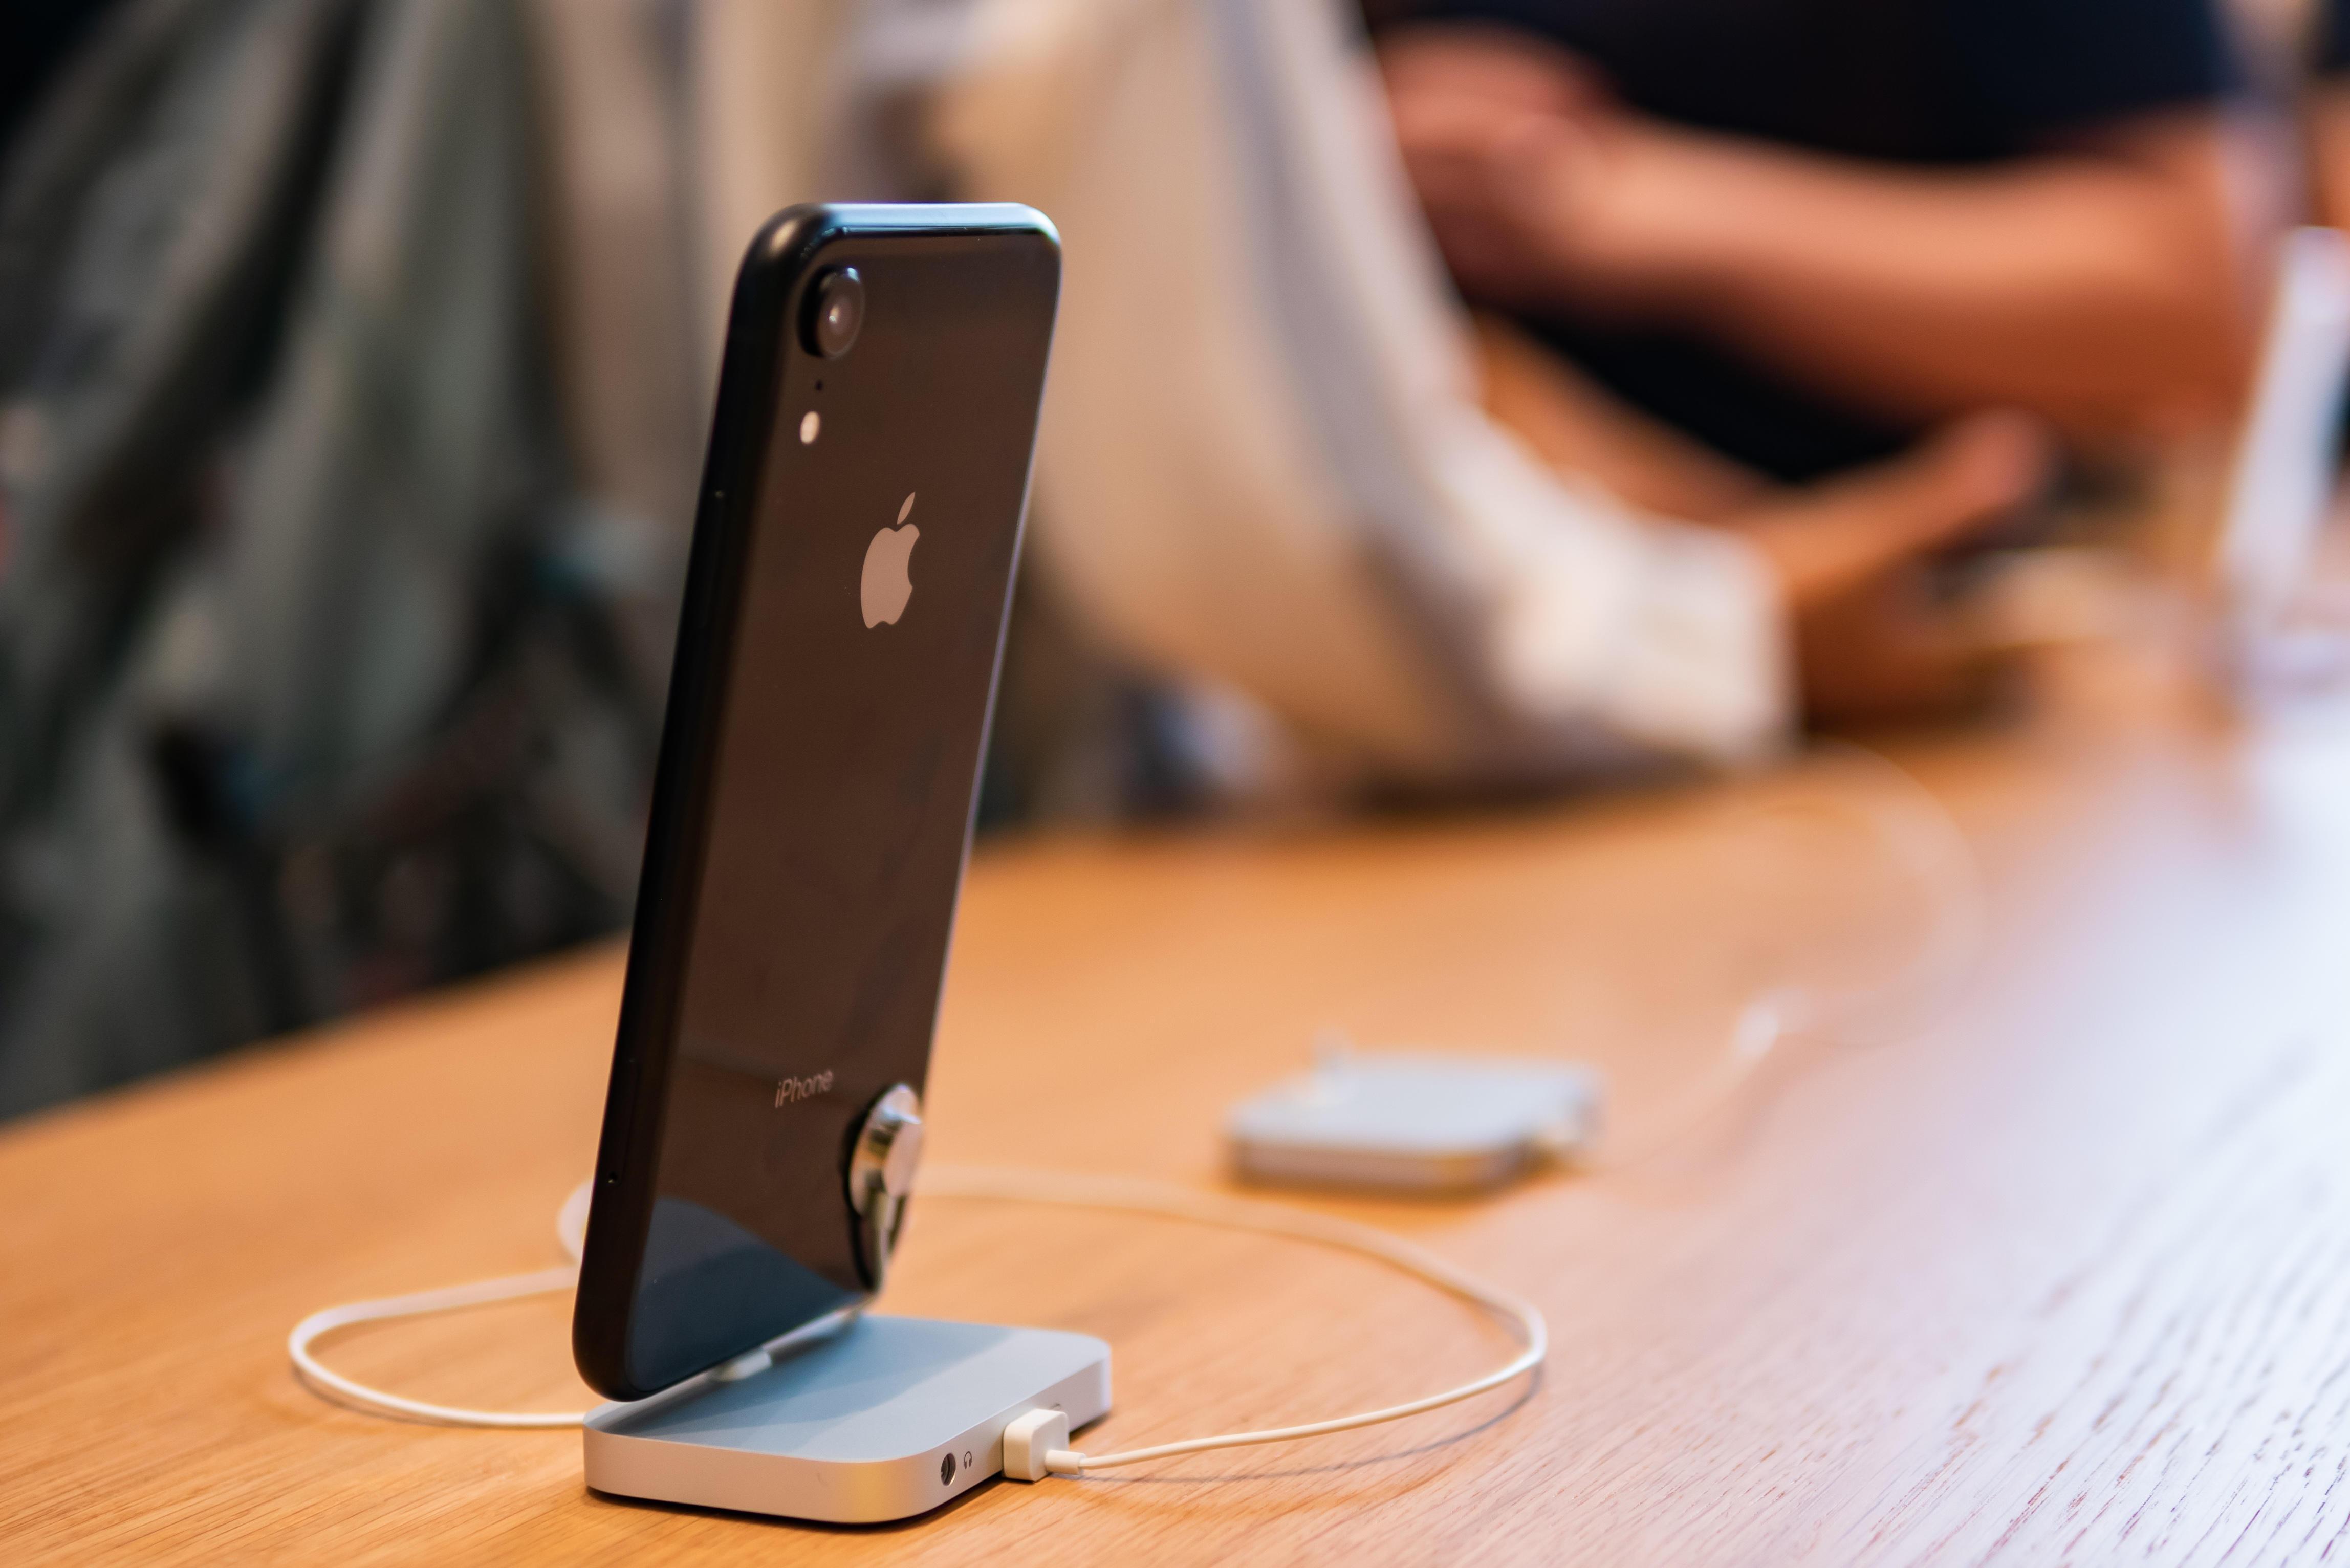  Apple  вознаградит 1 миллион долларов любому, кто сможет взломать iPhone в ходе смелого теста своих систем безопасности